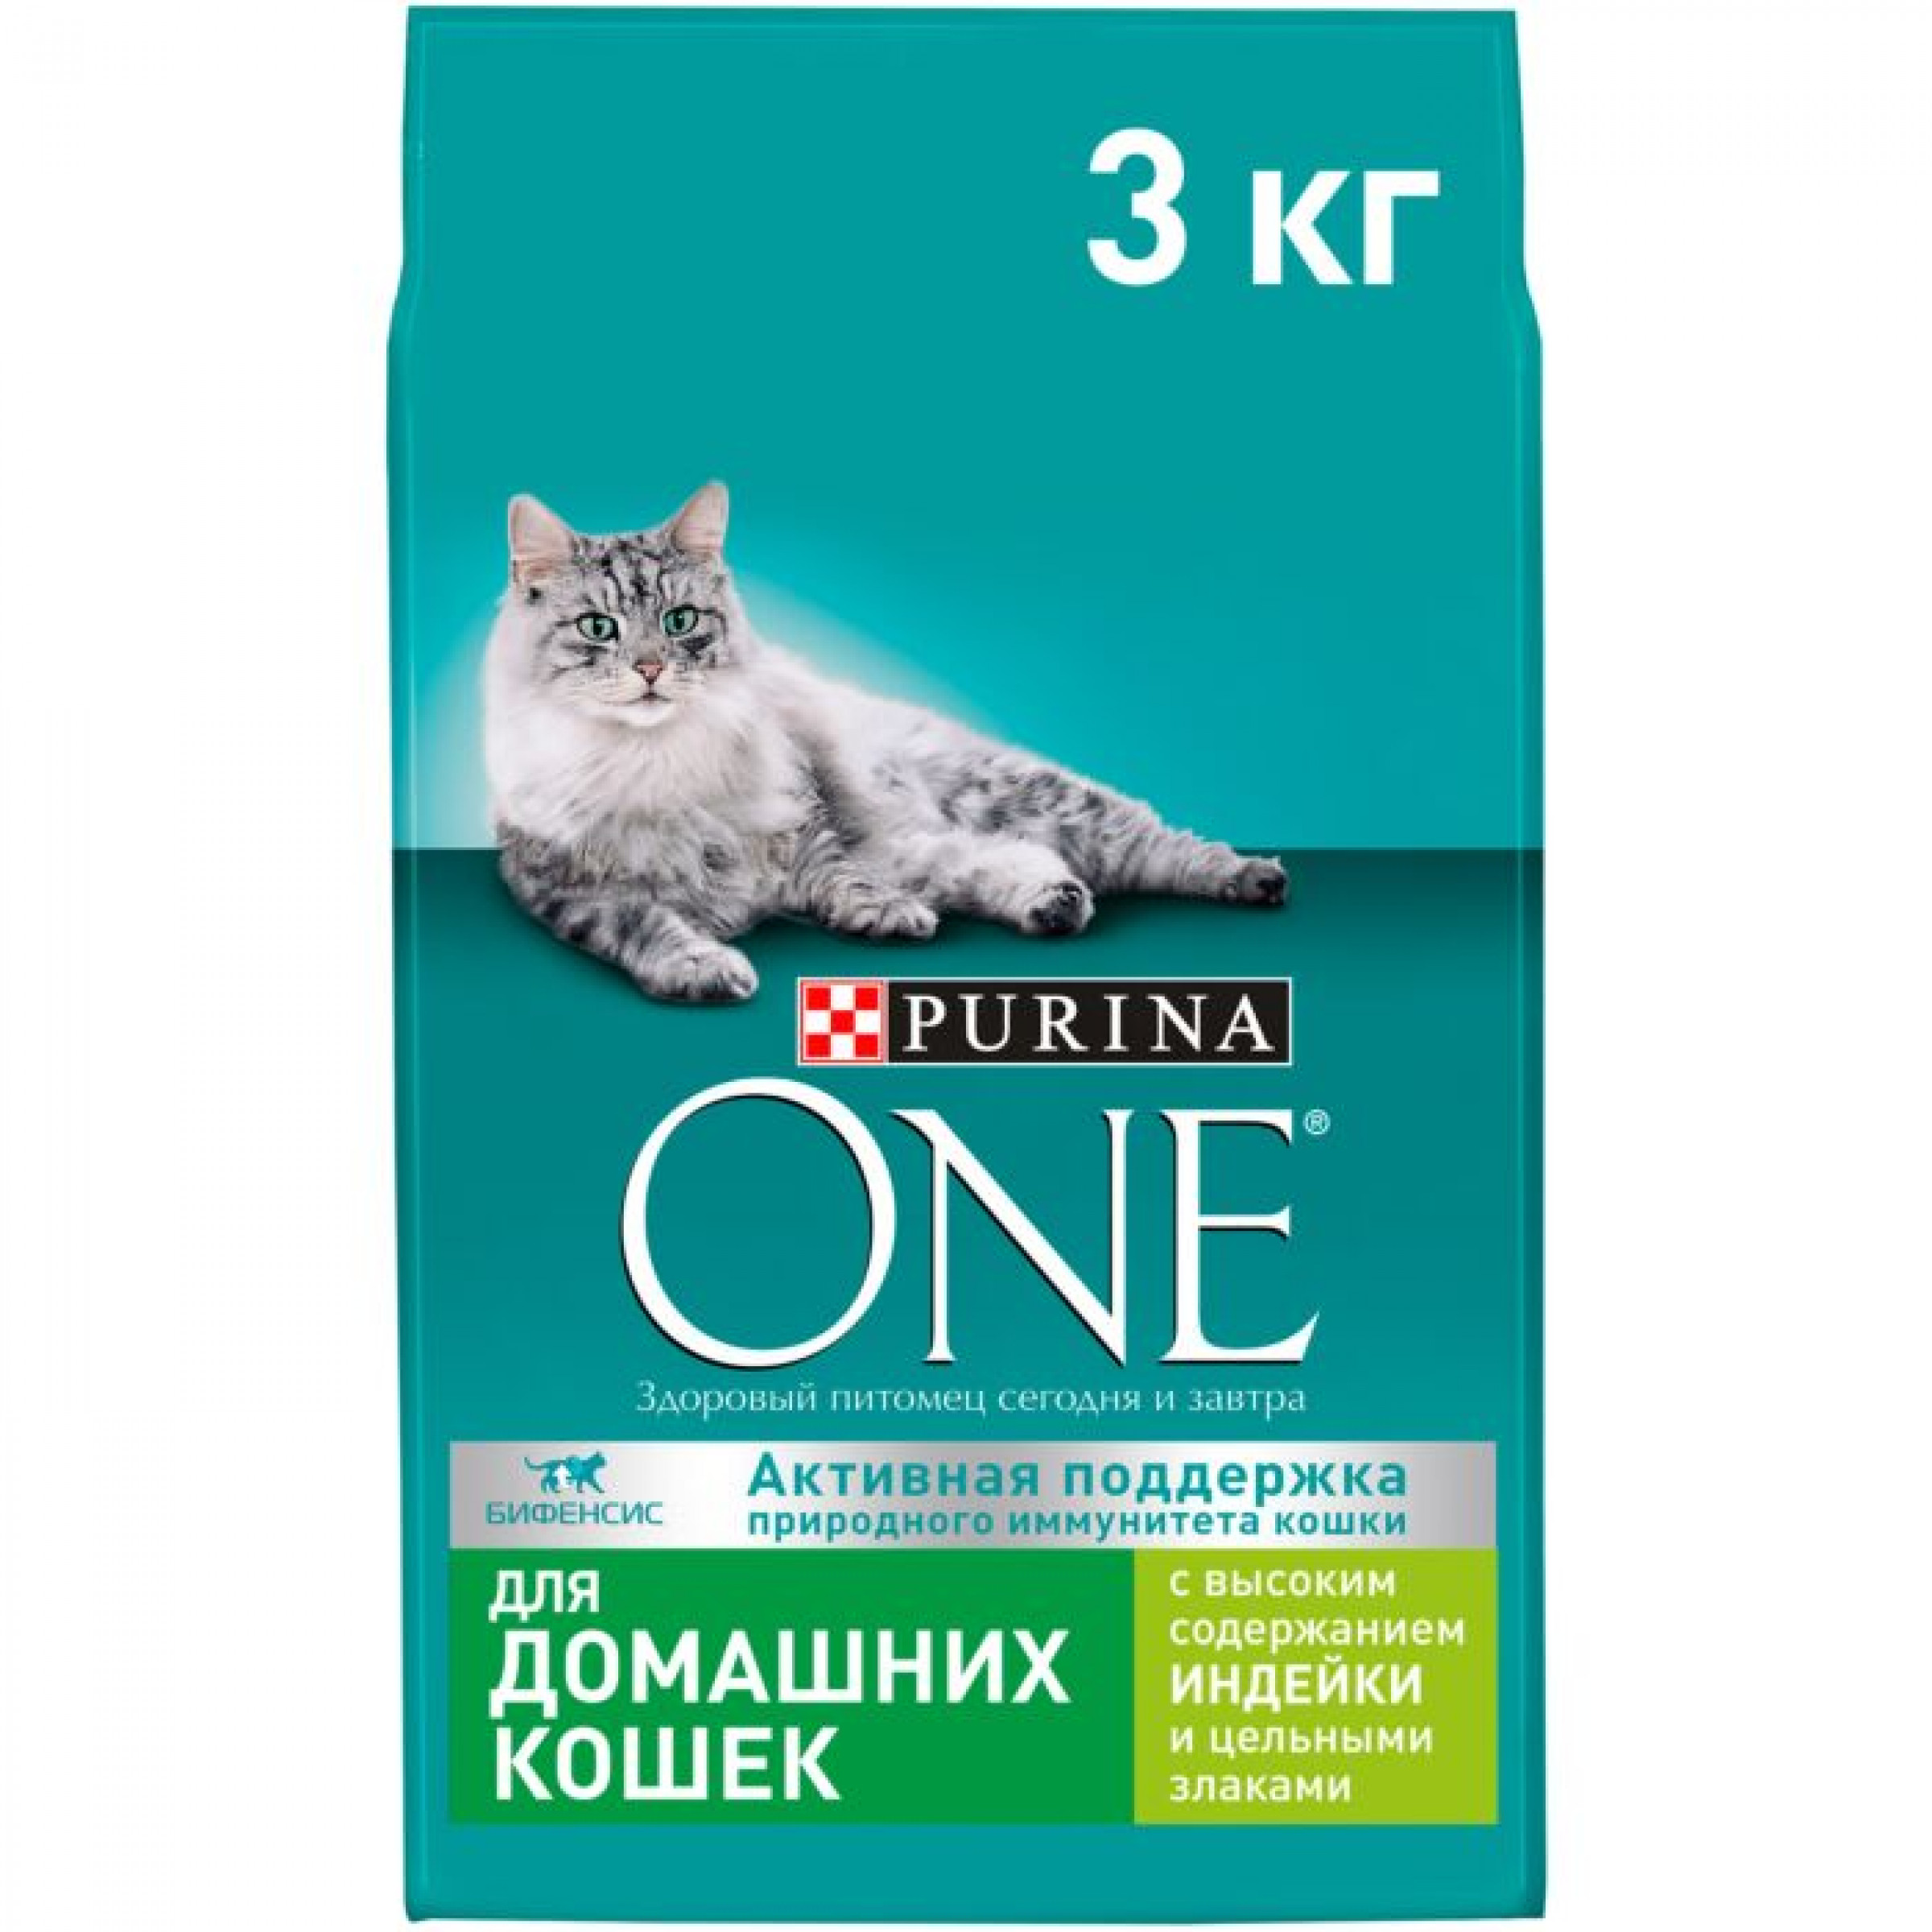 Сухой корм Purina One для домашних кошек с индейкой и цельными злаками, 3 кг